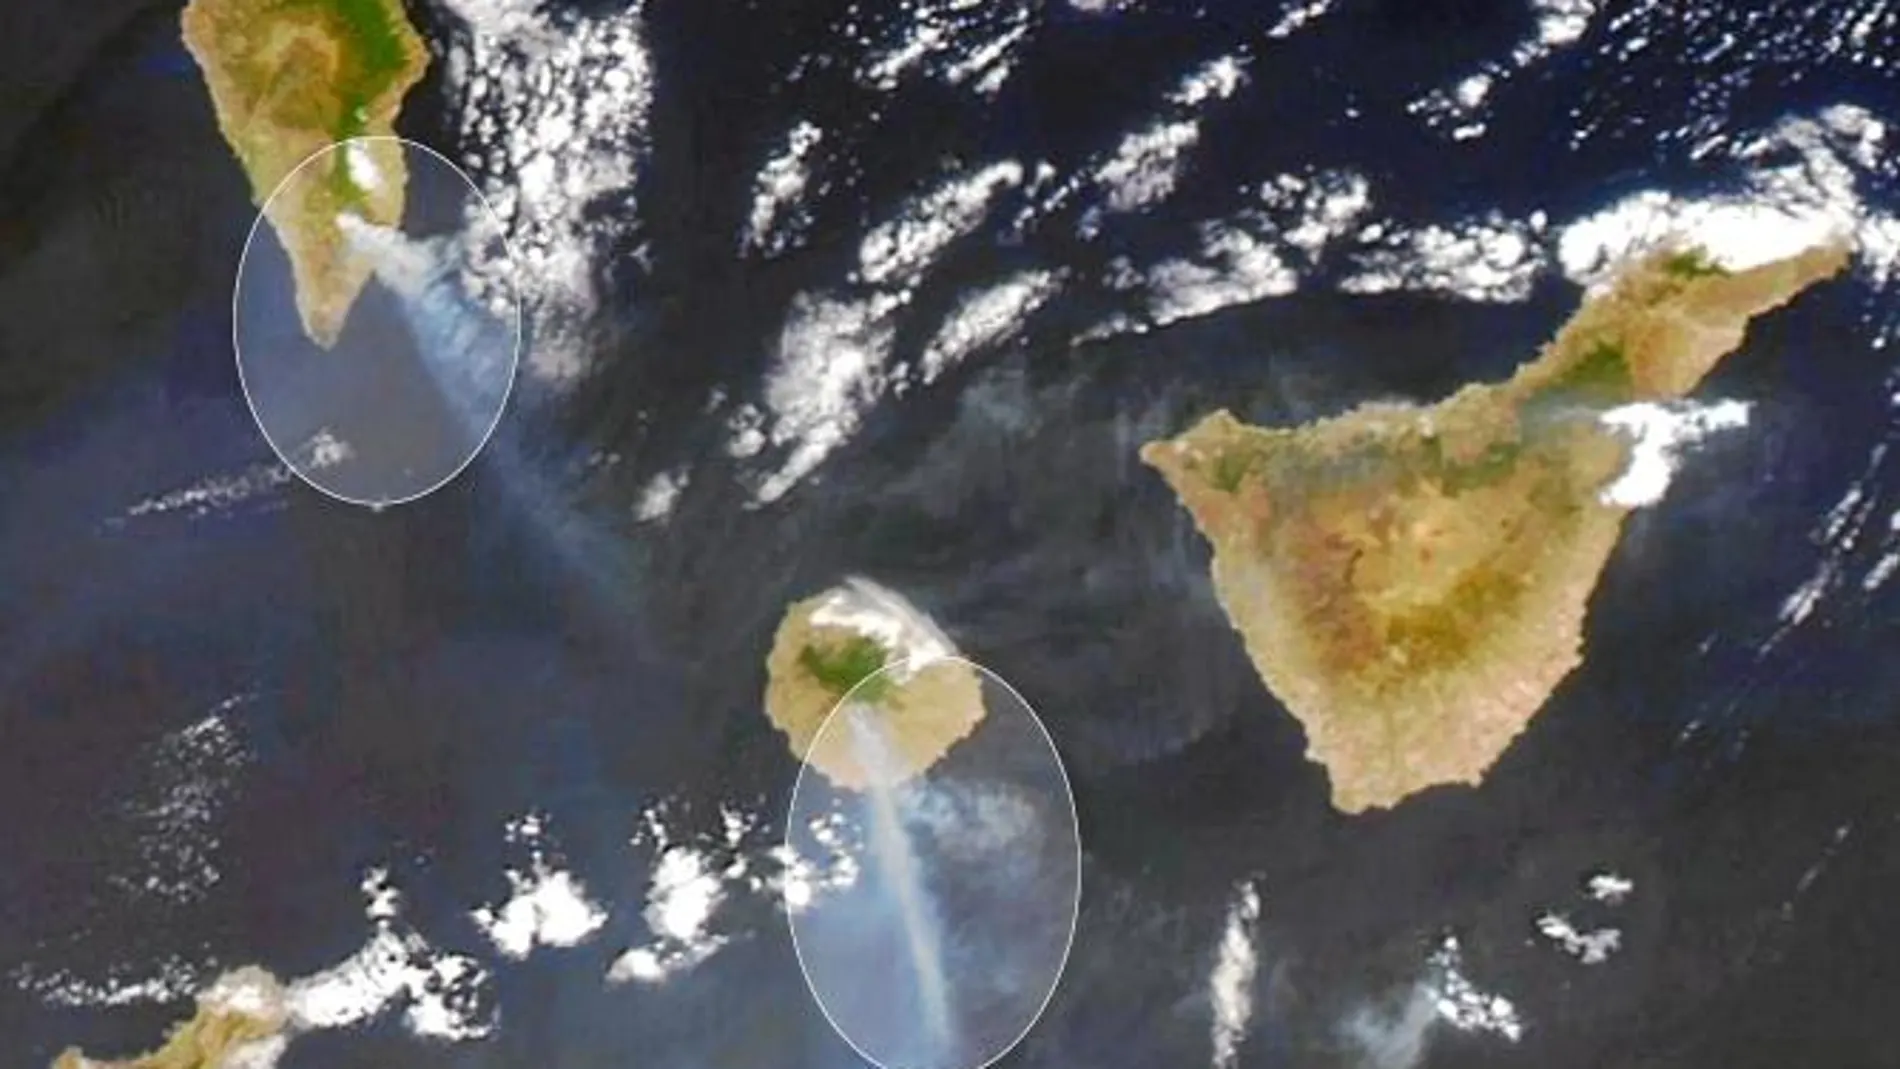 Los incendios de La Palma y La Gomera desde el espacio Las columnas de humo (rodeadas por un círculo) provocadas por los incendios desatados en las dos islas canarias el pasado fin de semana han sido captadas por el satélite Aqua de la NASA.